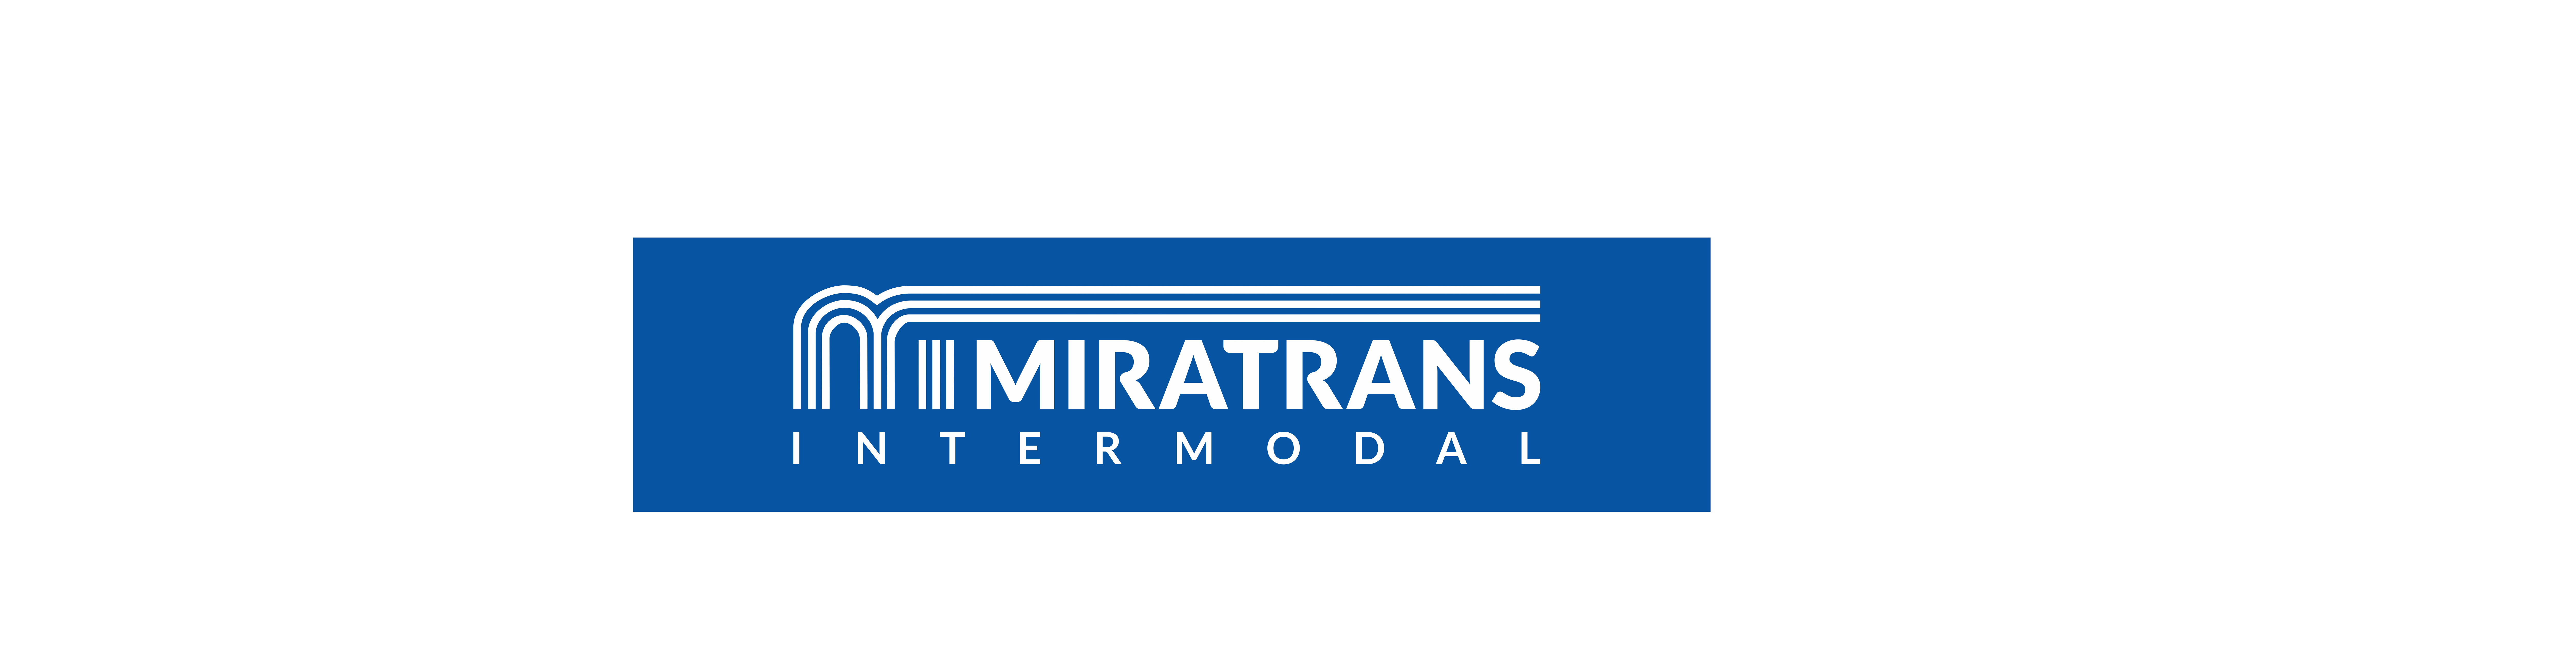 Logo Miratrans INTERMODAL